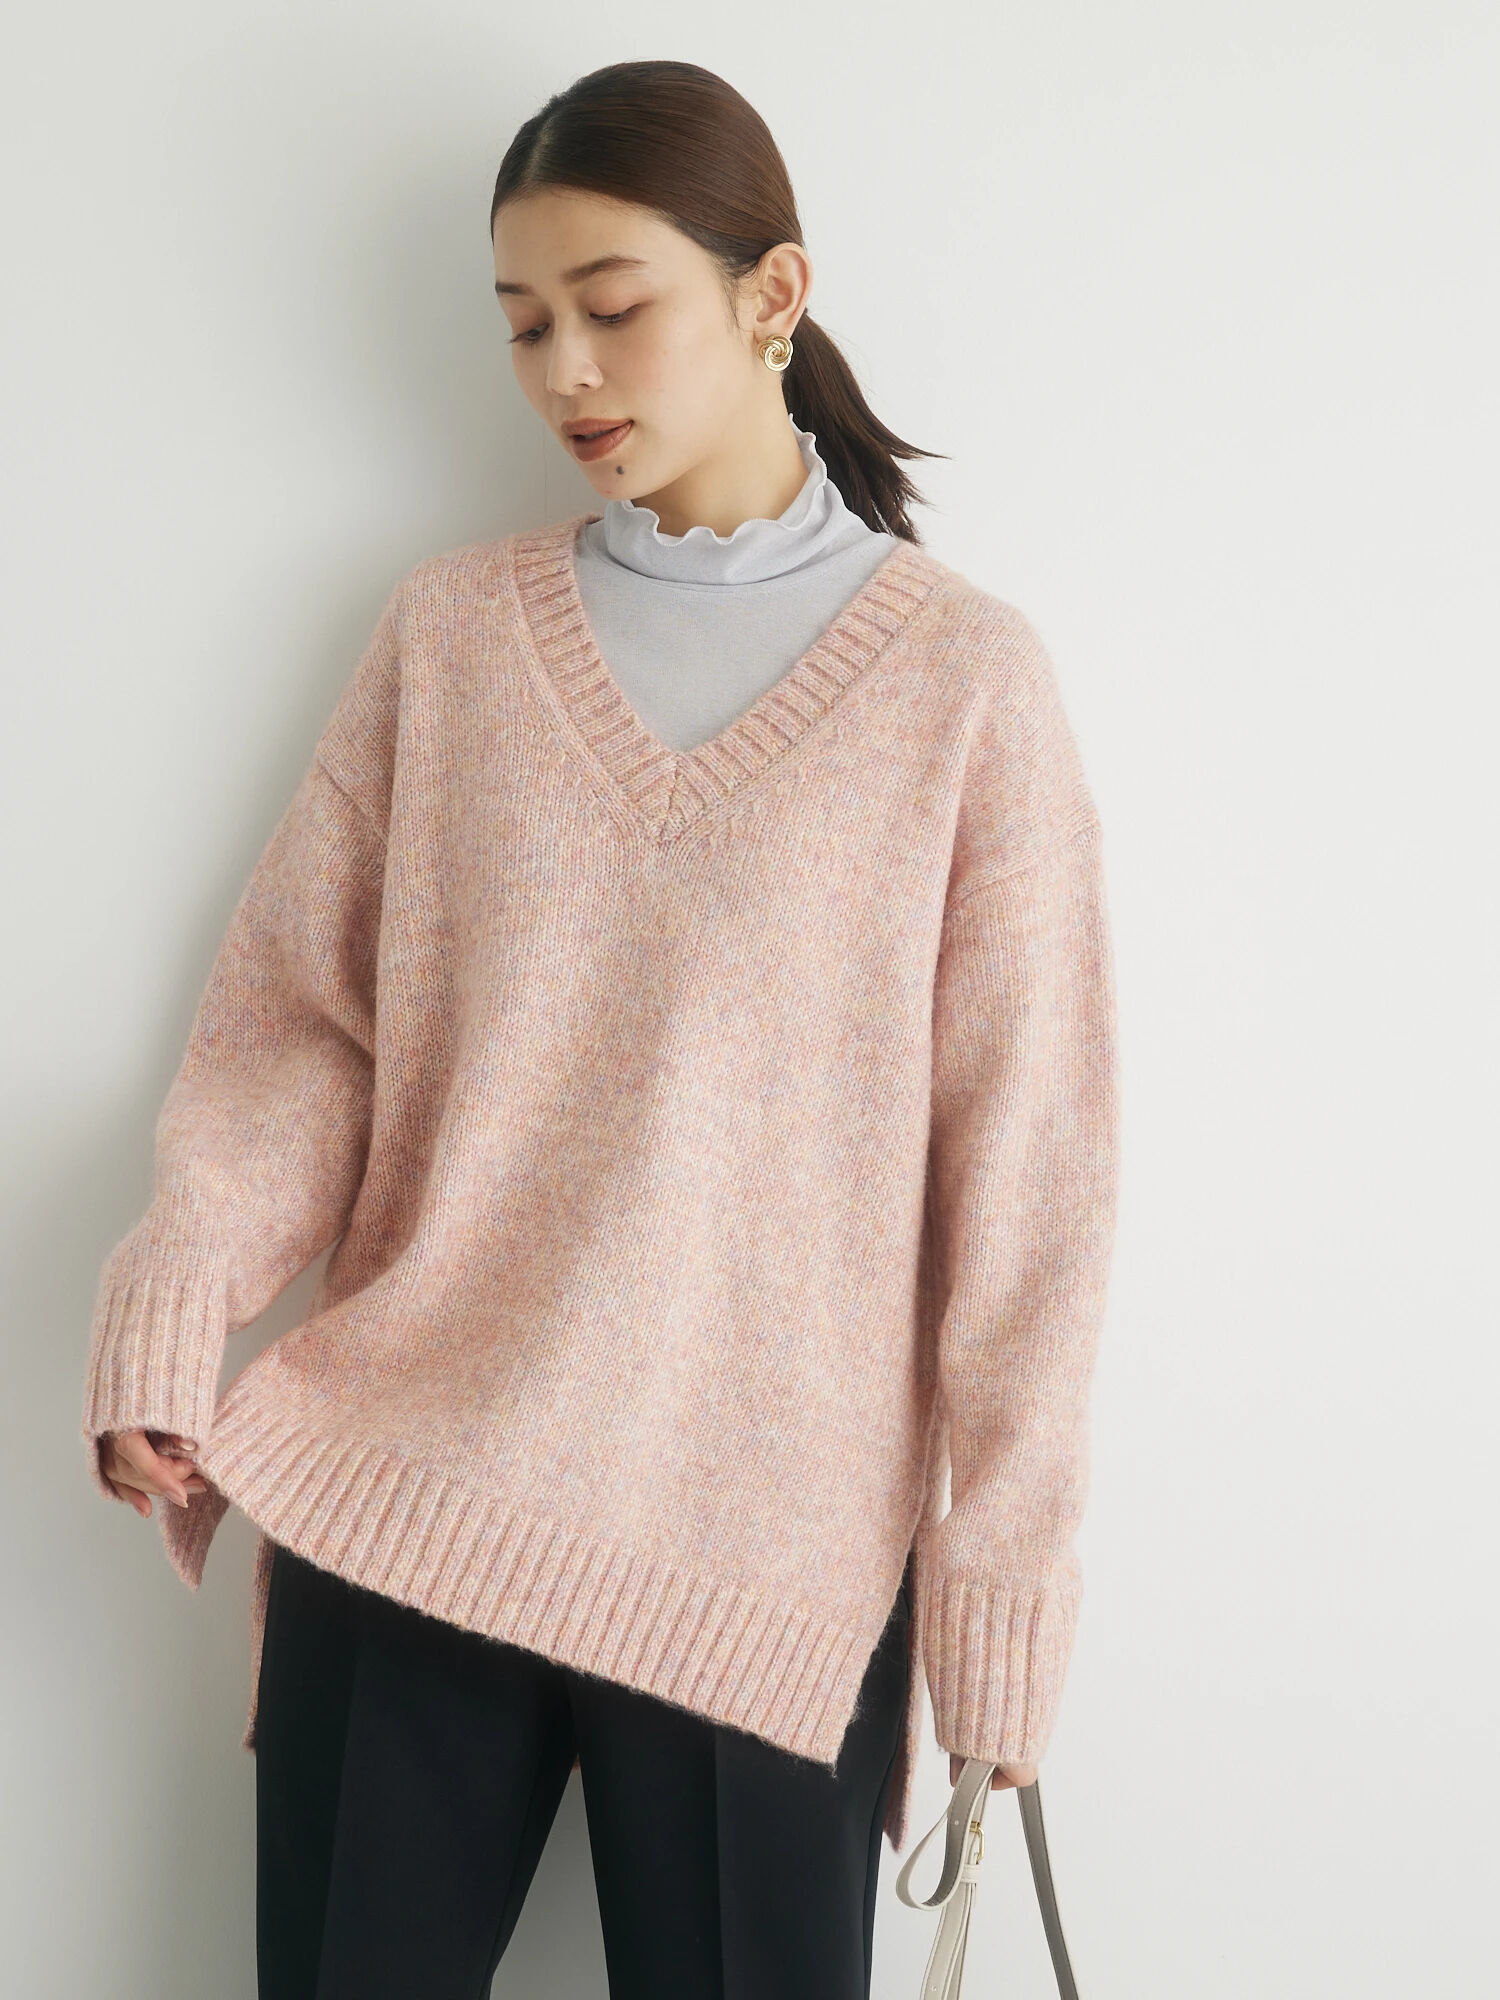 日本メーカー新品 センスオブプレイス Vネック チュニック ニット セーター アイボリー